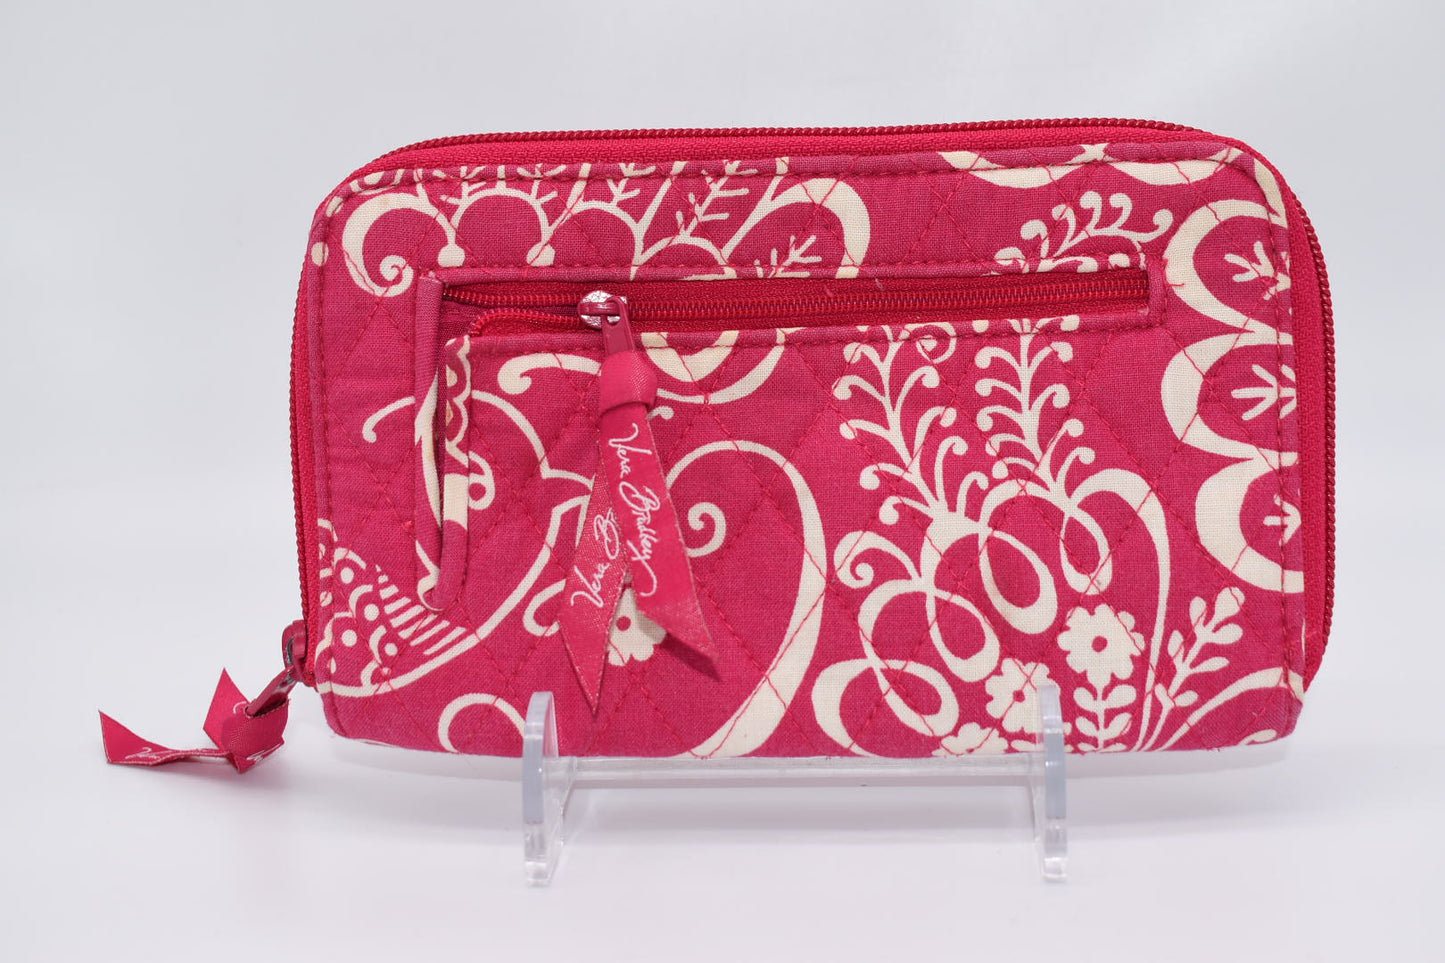 Vera Bradley Zip Around Wallet in "Cupcake Pink" Pattern